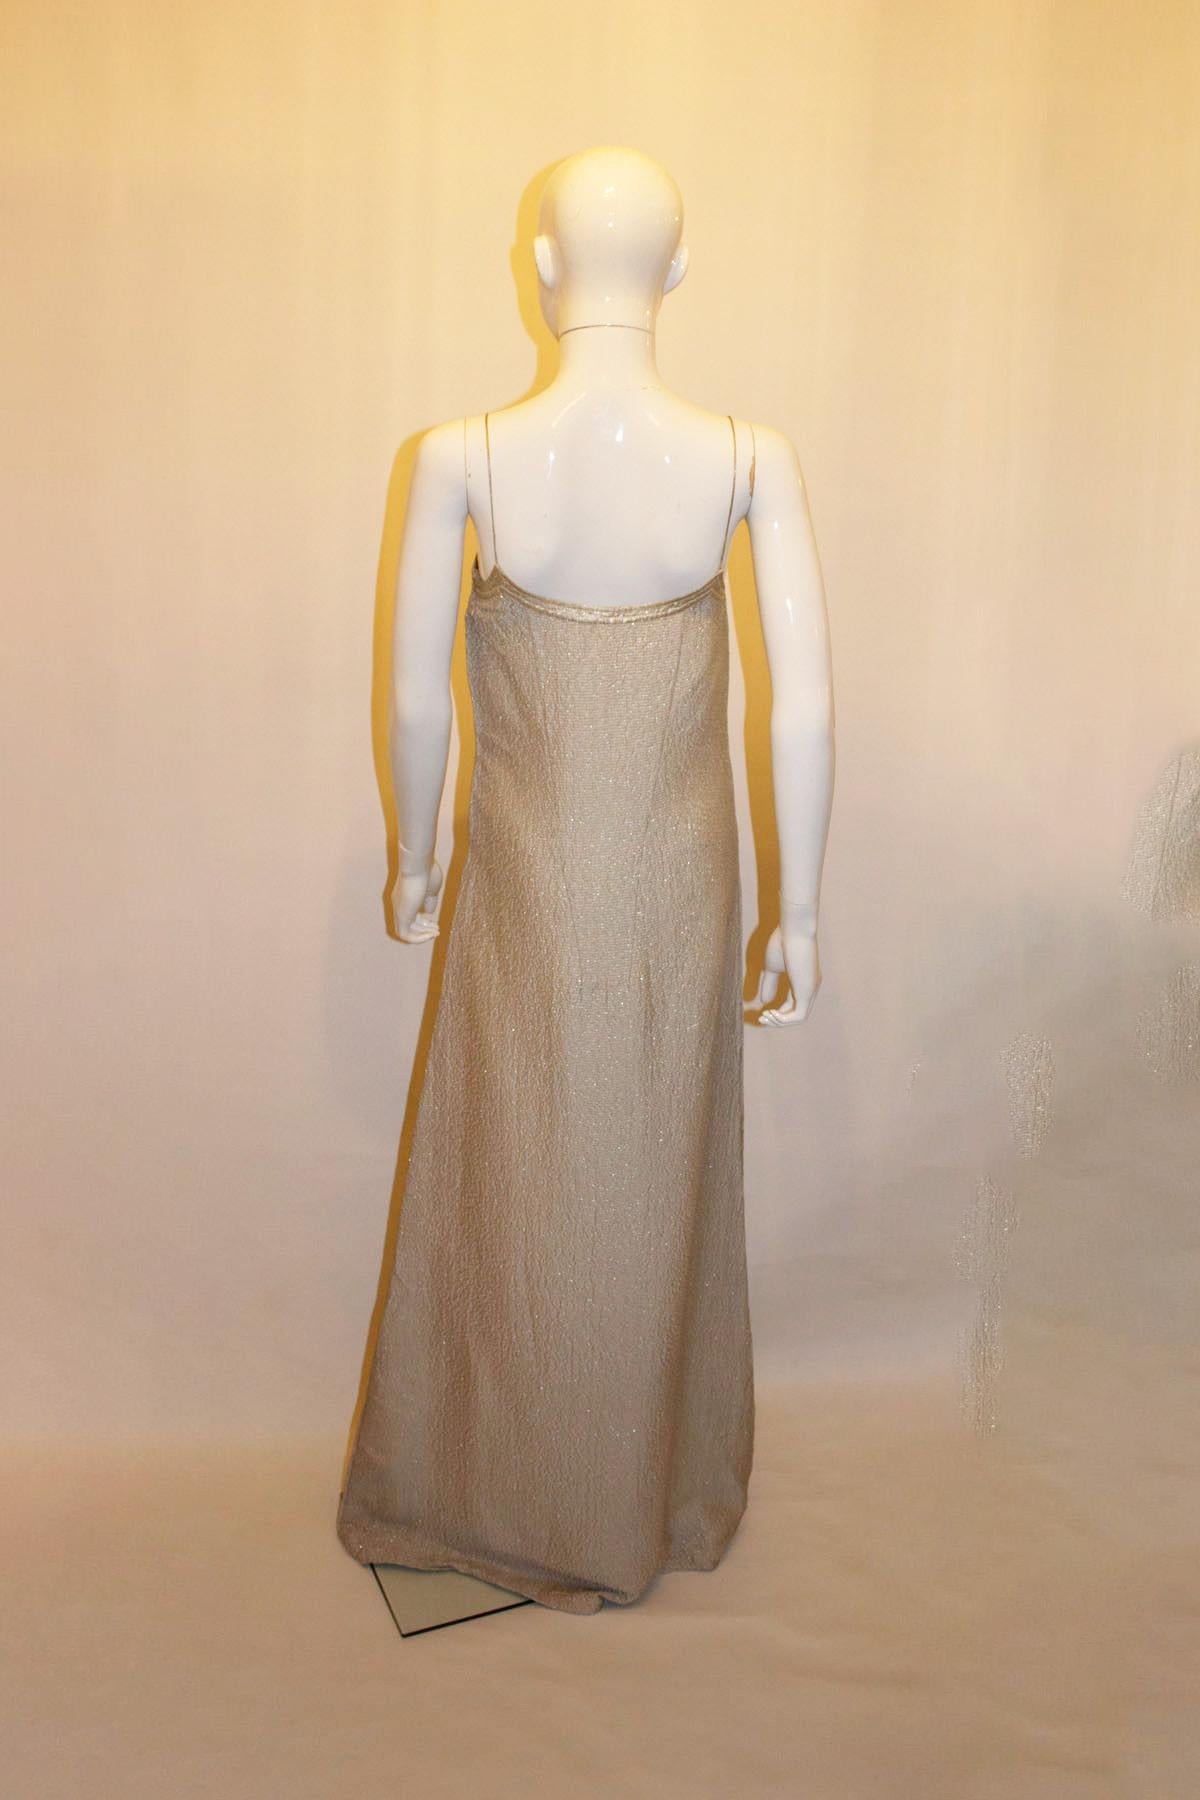 Une superbe robe de soirée vintage en argent de Calvin Klein. La robe est en soie et argent.  Il est composé d'un mélange de tissus texturés, de bretelles spaghetti et d'une ouverture zippée sur le côté.  à gauche.  Fabriquées en Italie.
Taille 4 .